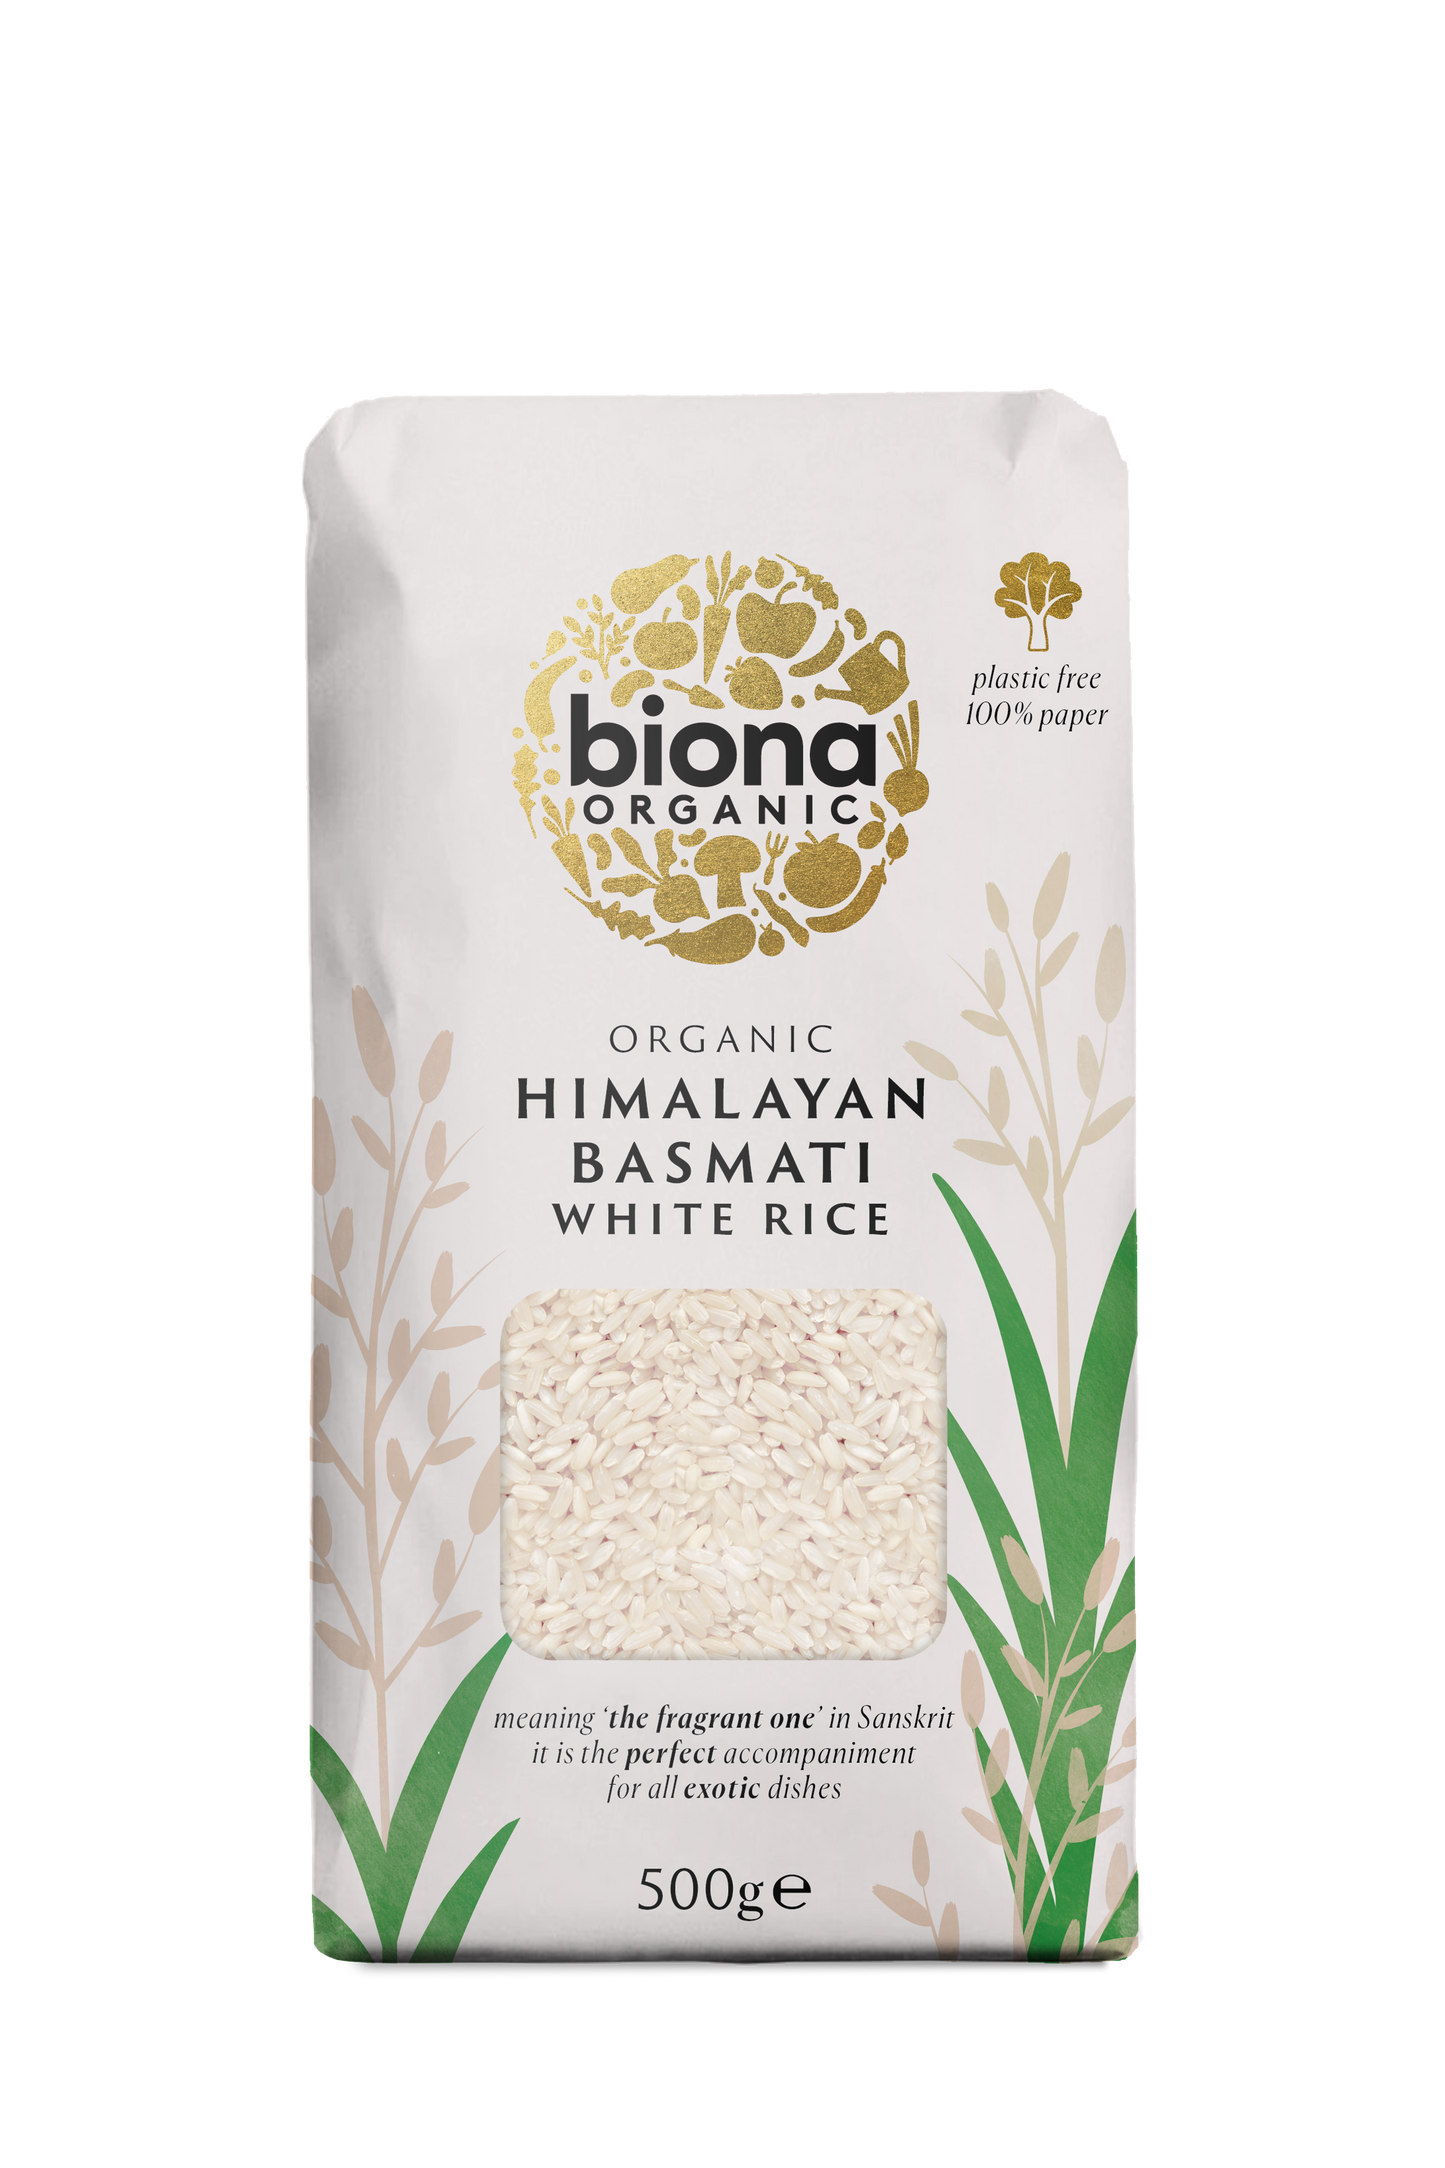 Biona Organic White Basmati Rice 500g Pack of 4